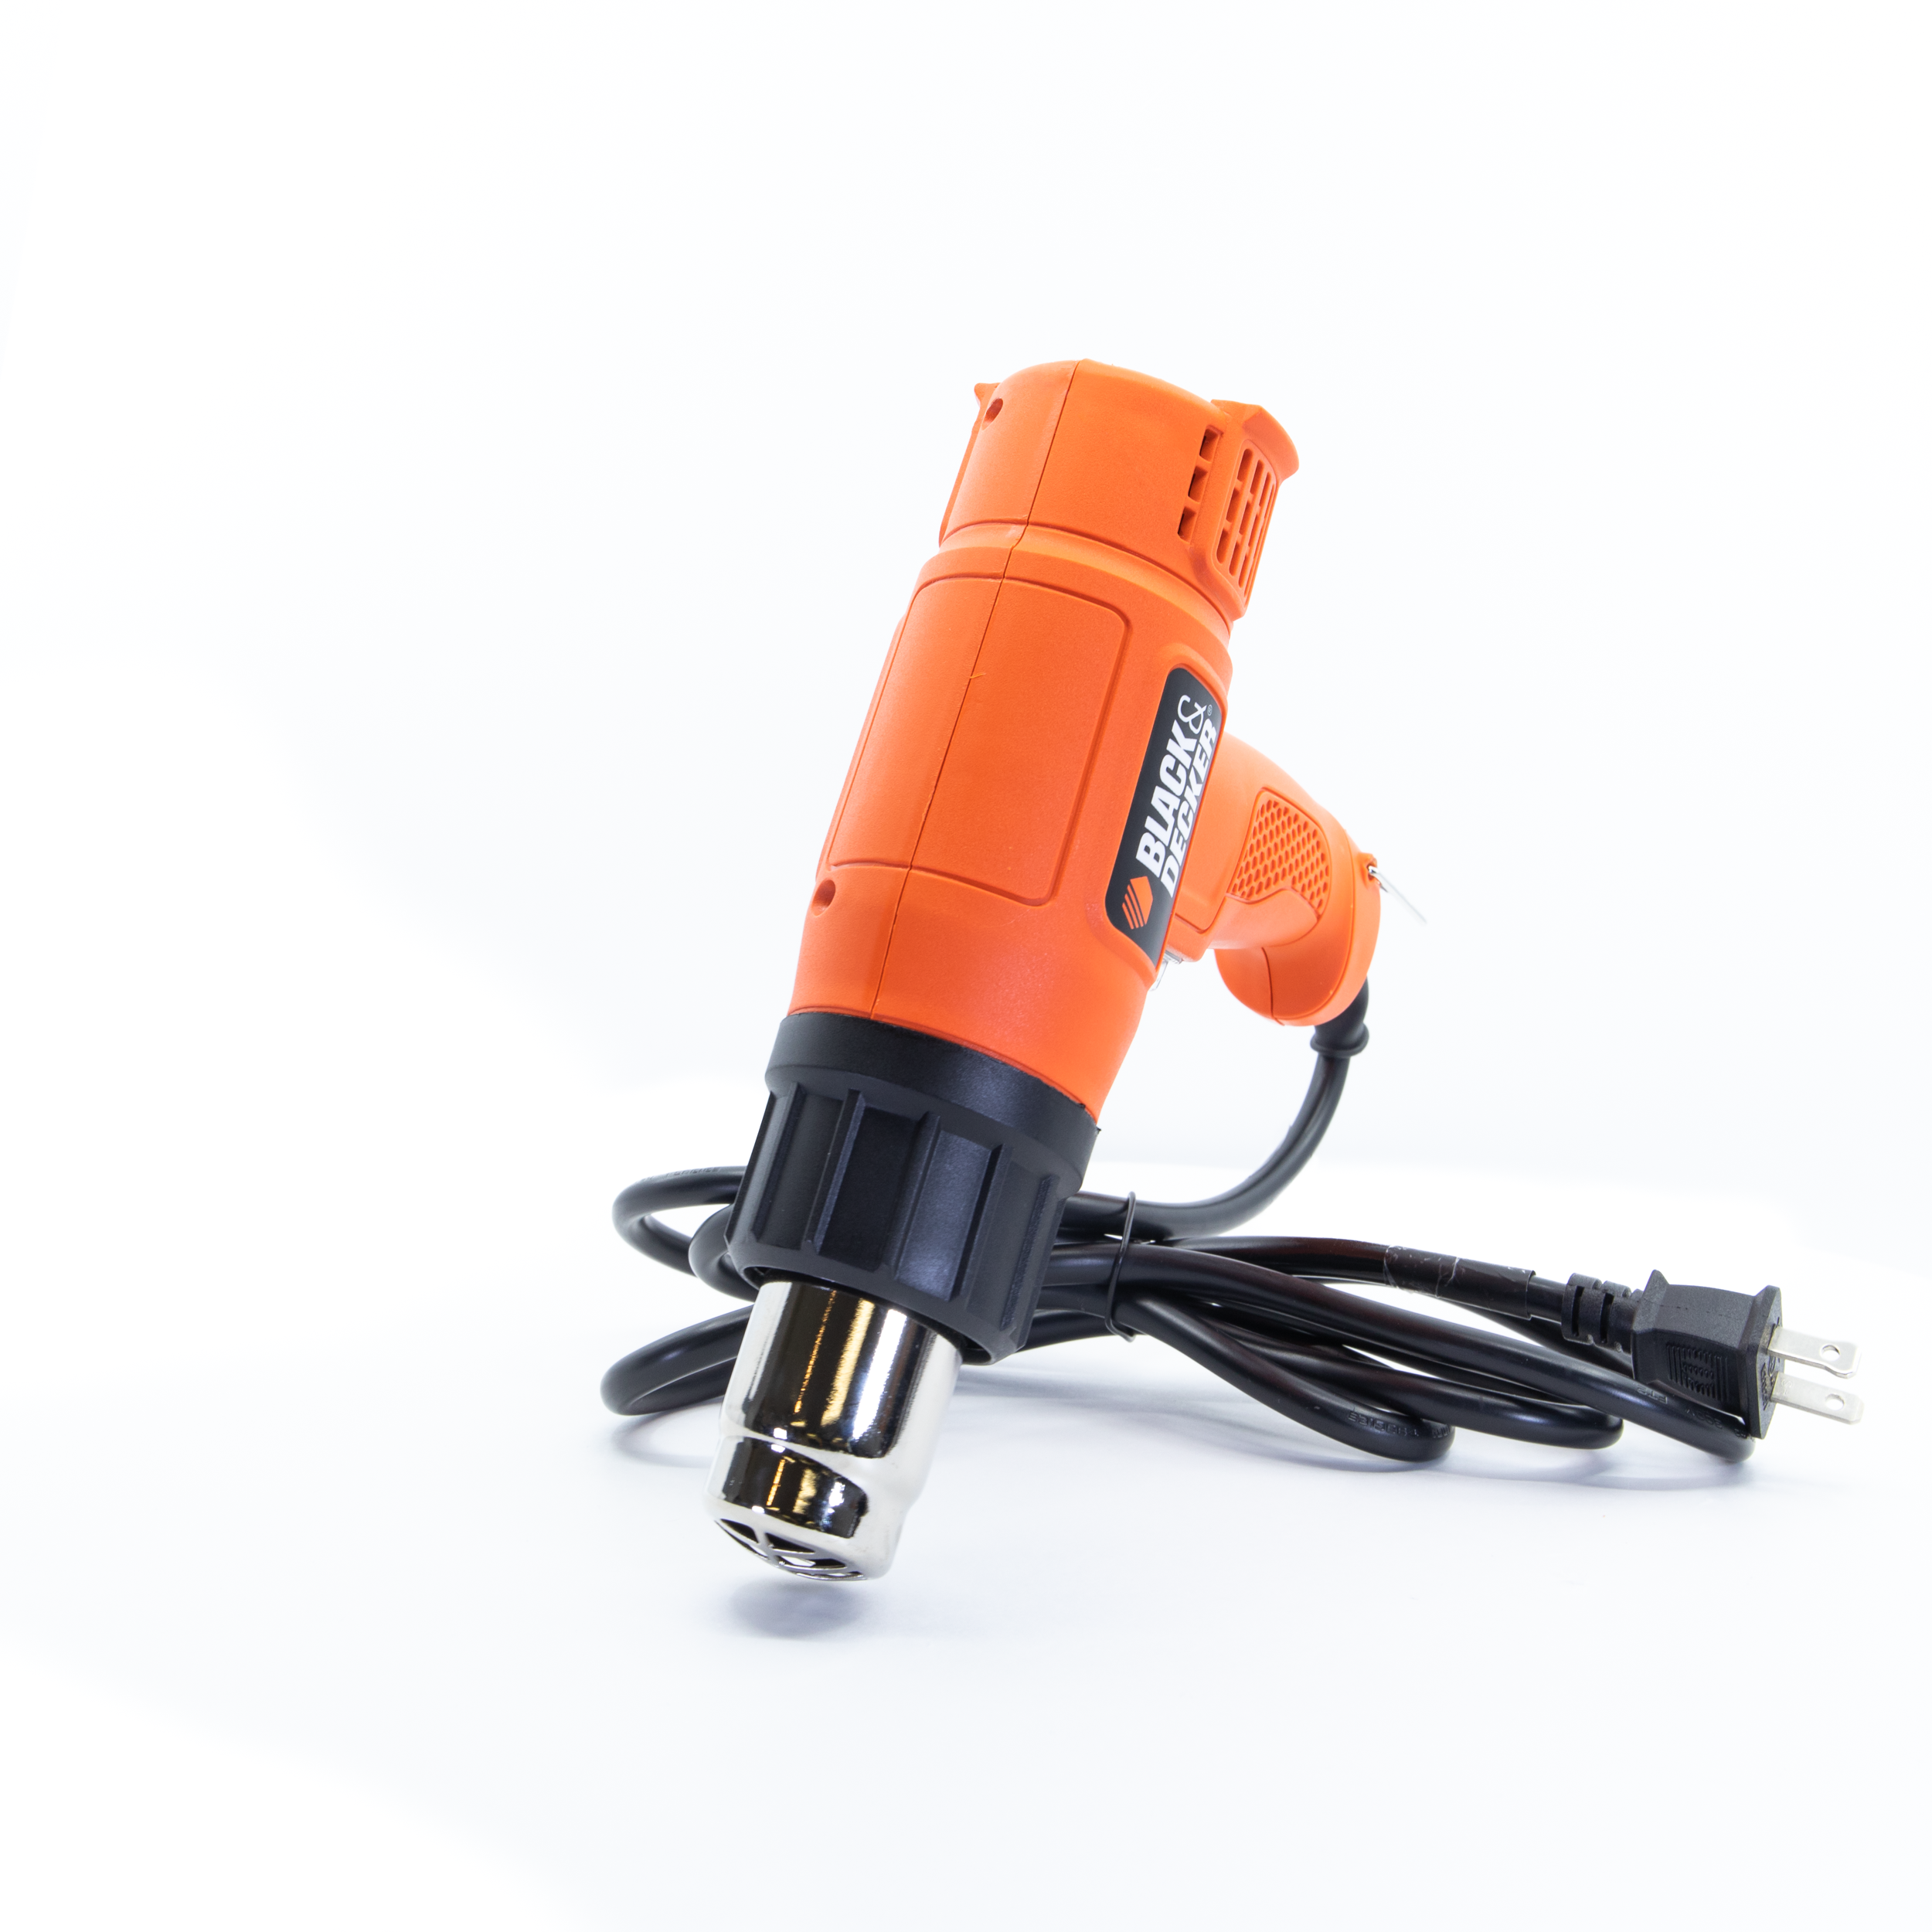 BLACK+DECKER Heat Gun, 1350 Watt, Dual Temperature Settings, Corded  (HG1300) - Power Heat Guns 